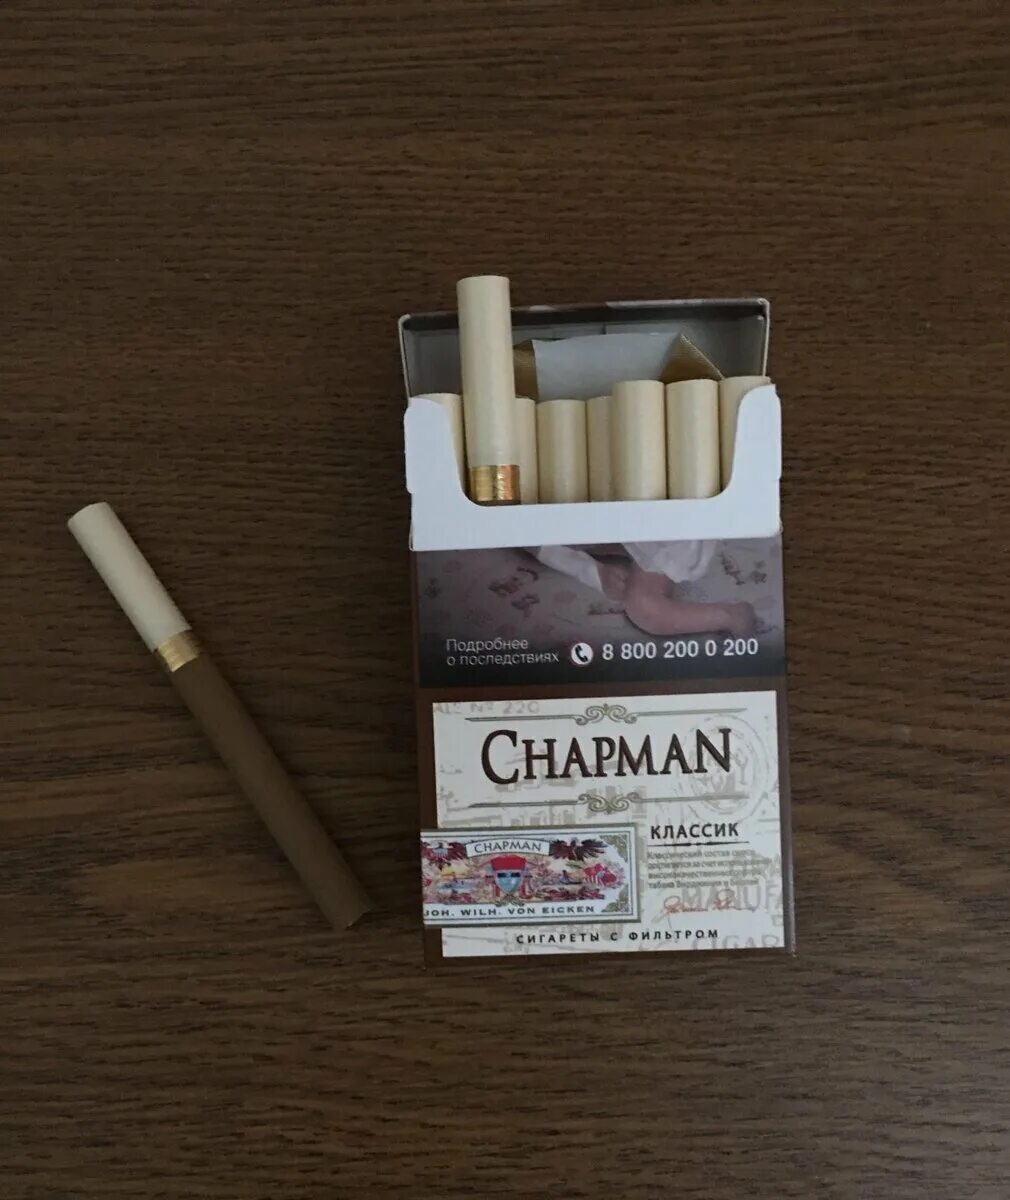 Сигареты Чапман Браун тонкие. Чапмен сигареты Классик. Chapman сигареты вкусы Браун. Чапман сигареты класси.